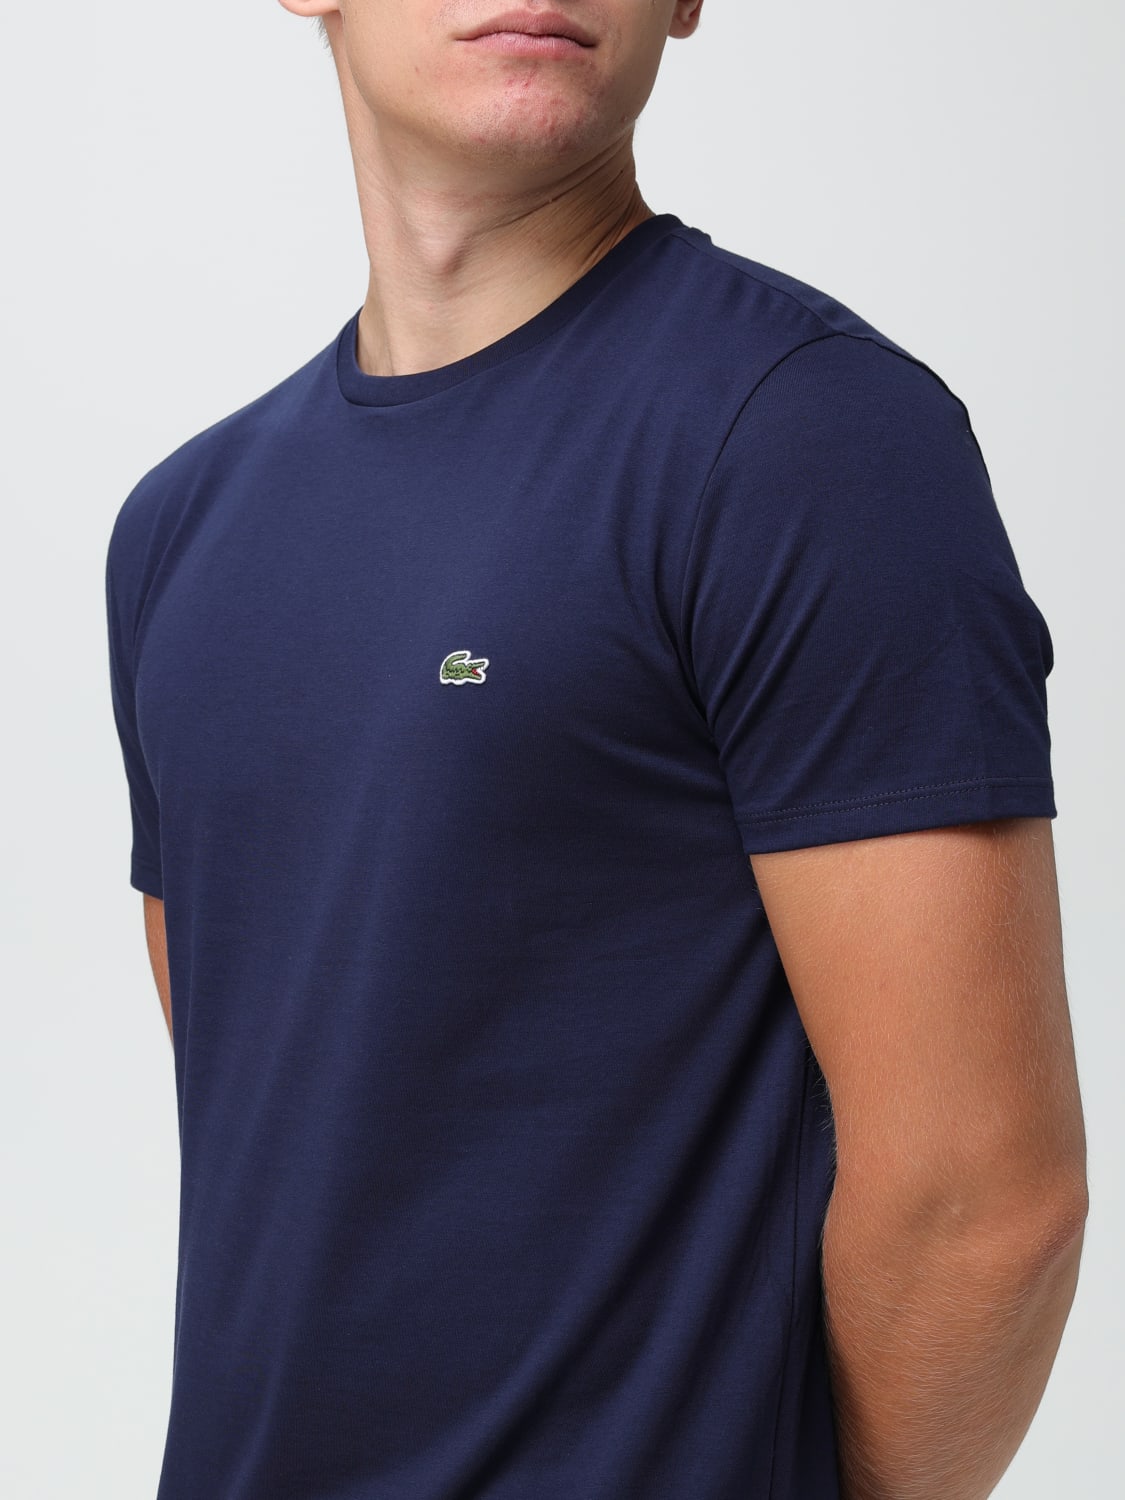 LACOSTE: Camiseta para hombre, Azul Oscuro